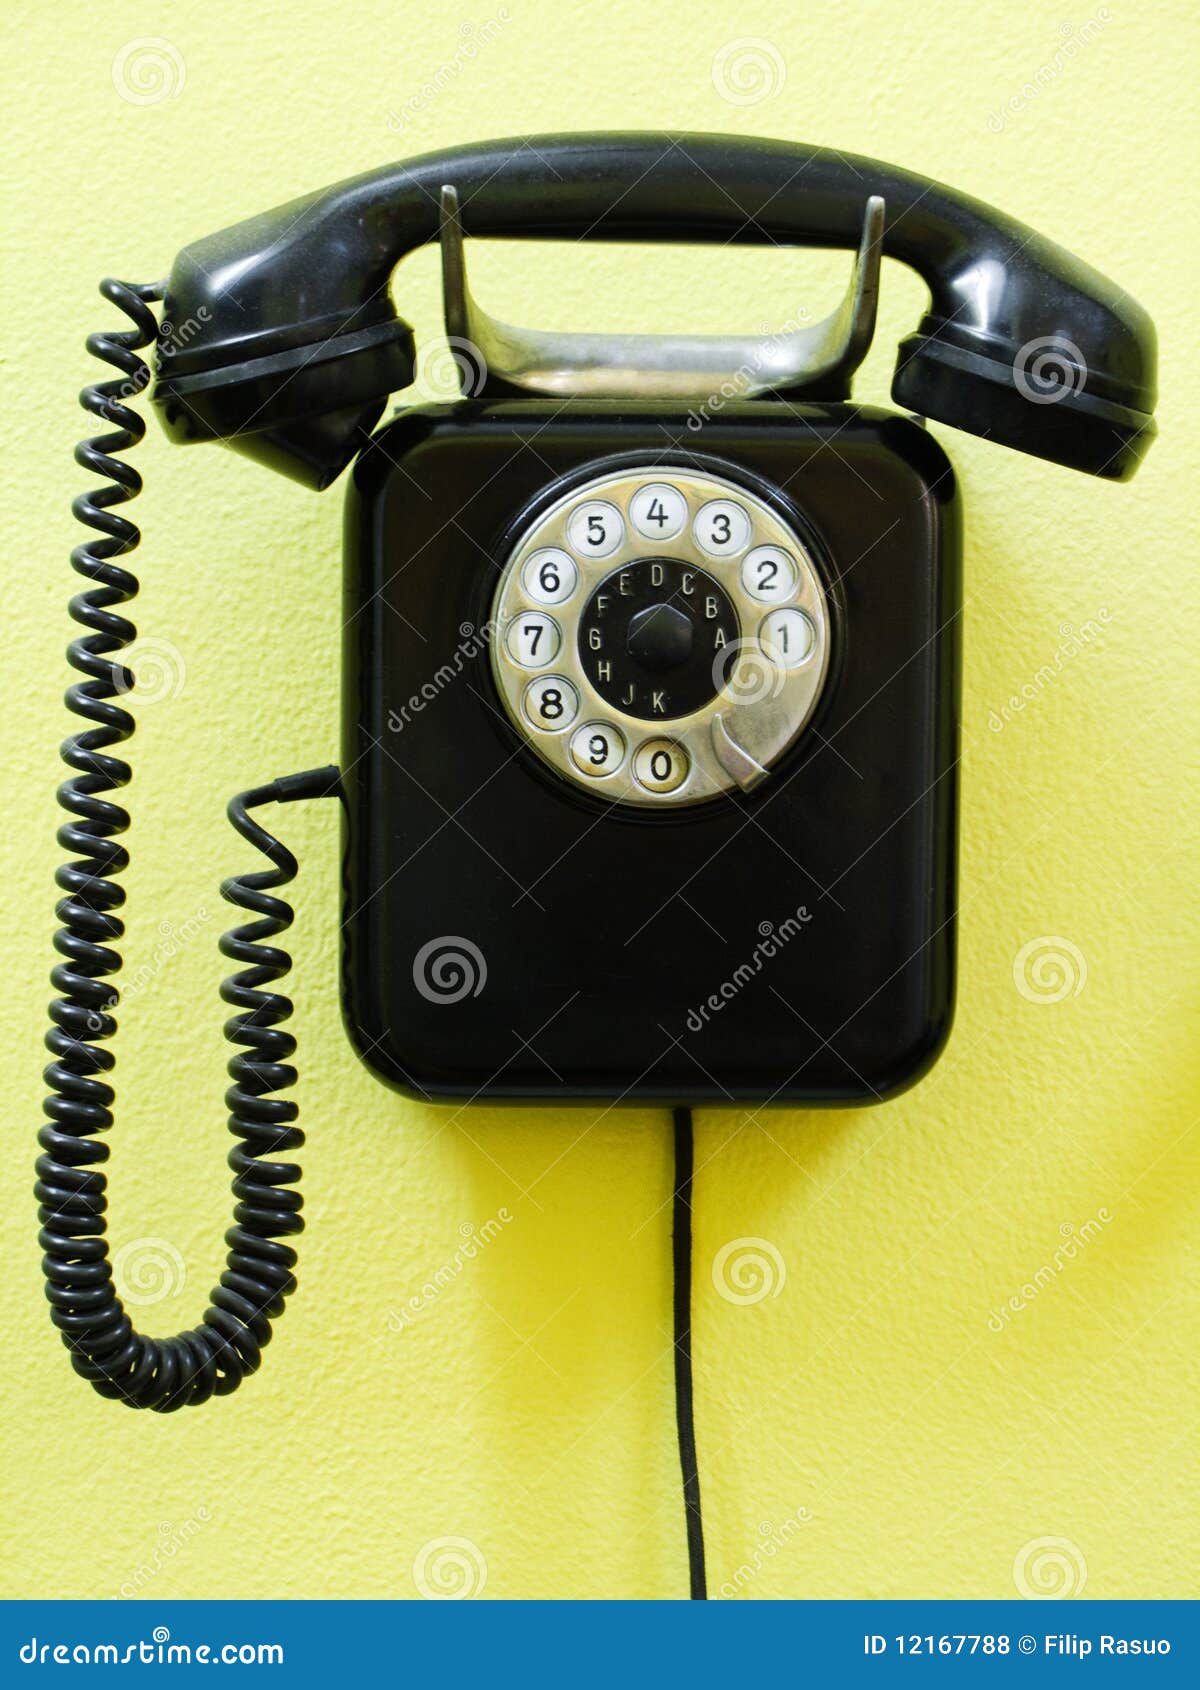 Old Vintage Phone 93